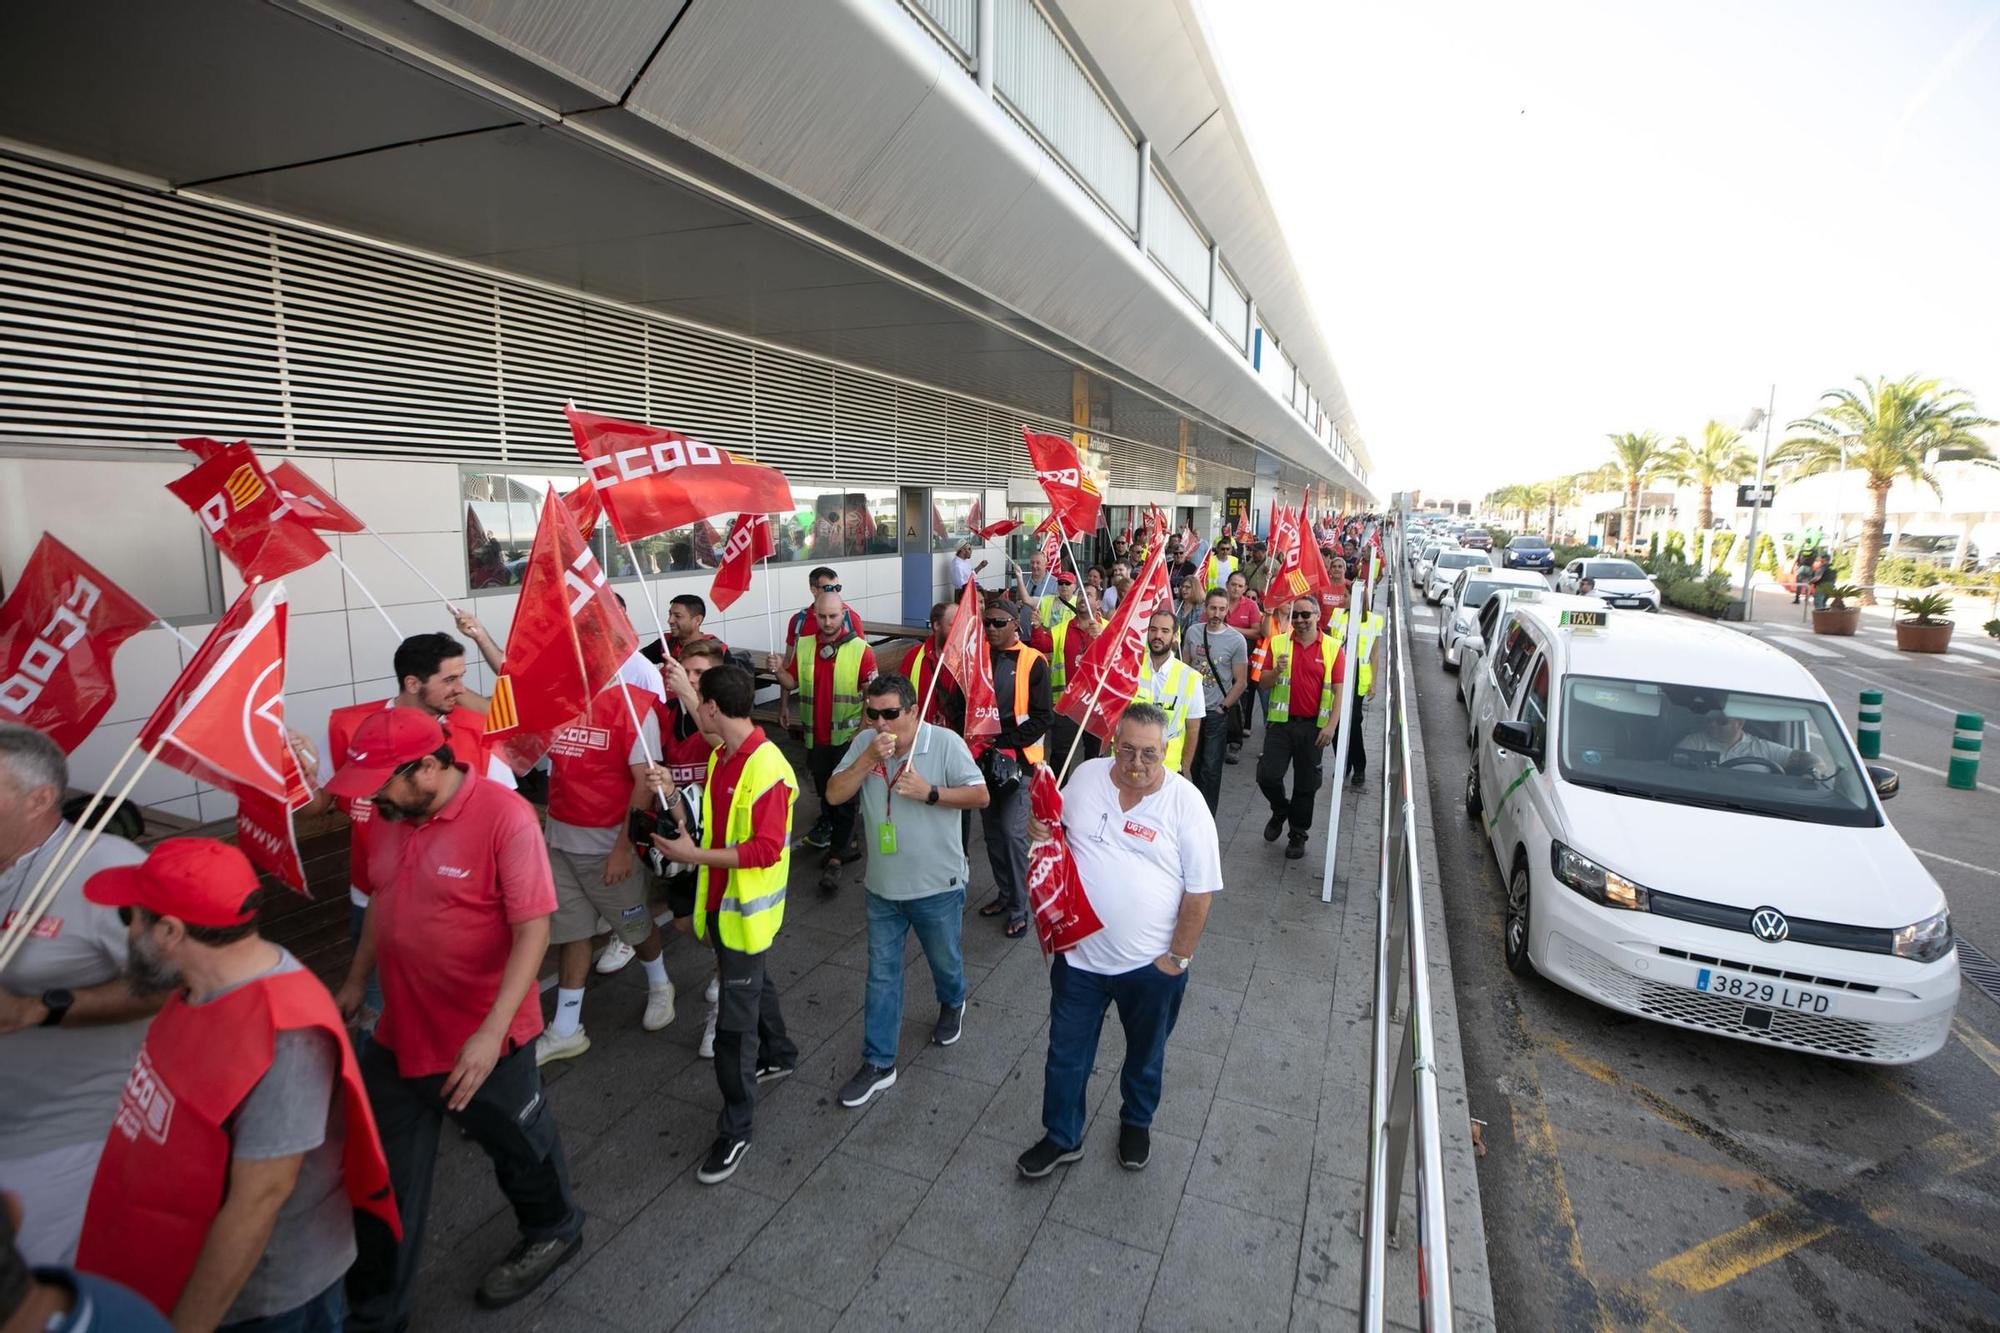 Descubre las mejores fotos de la concentración de trabajadores de Iberia en el aeropuerto de Ibiza